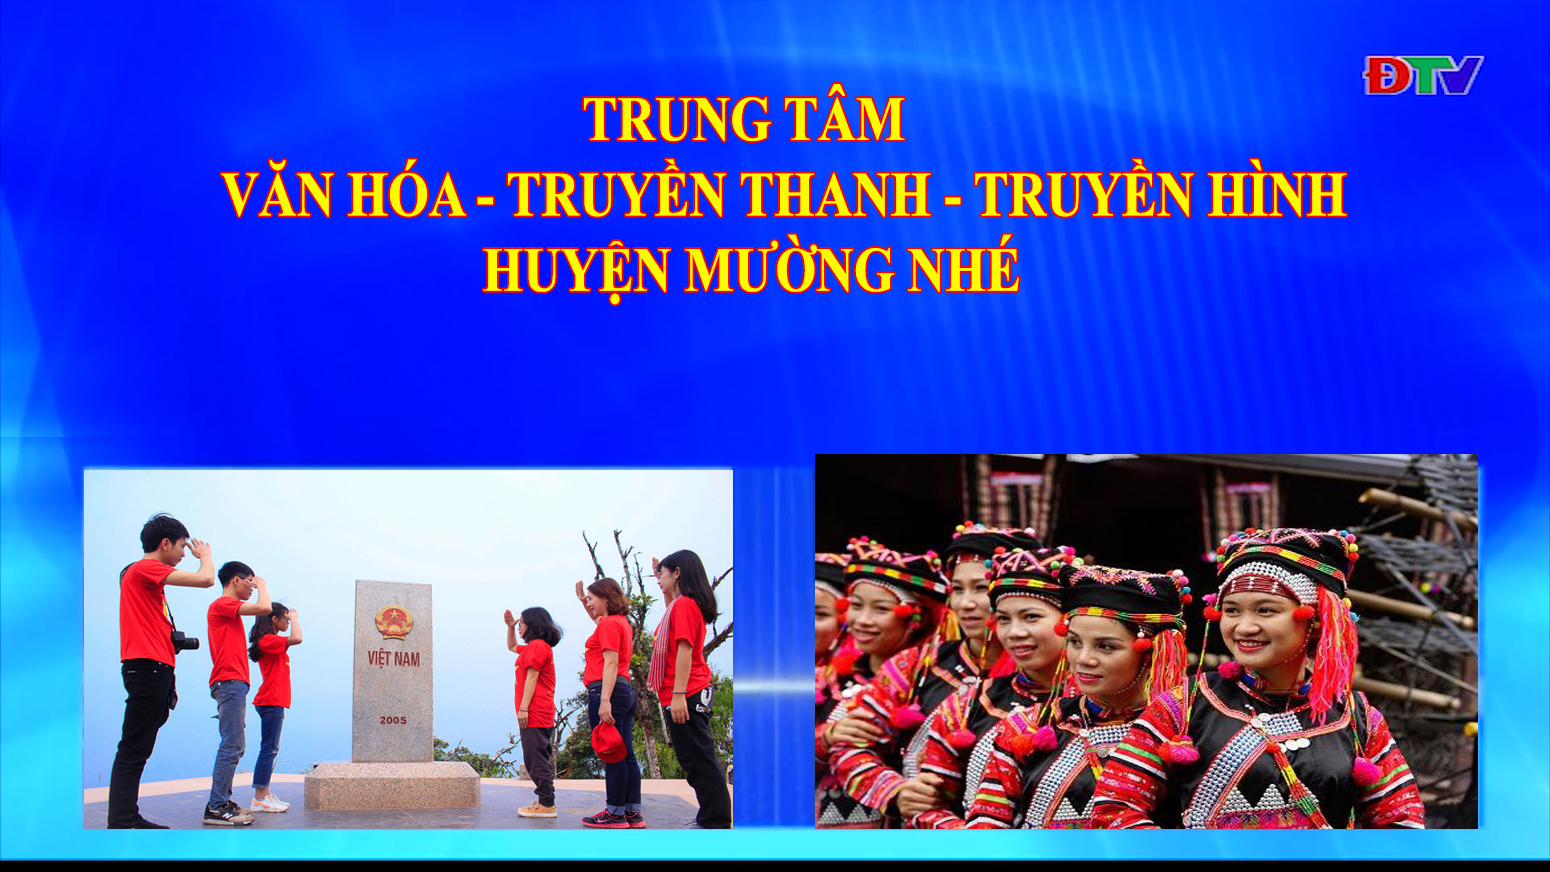 Trung tâm Văn hóa Truyền thanh Truyền hình huyện Mường Nhé (Ngày 21-5-2020)